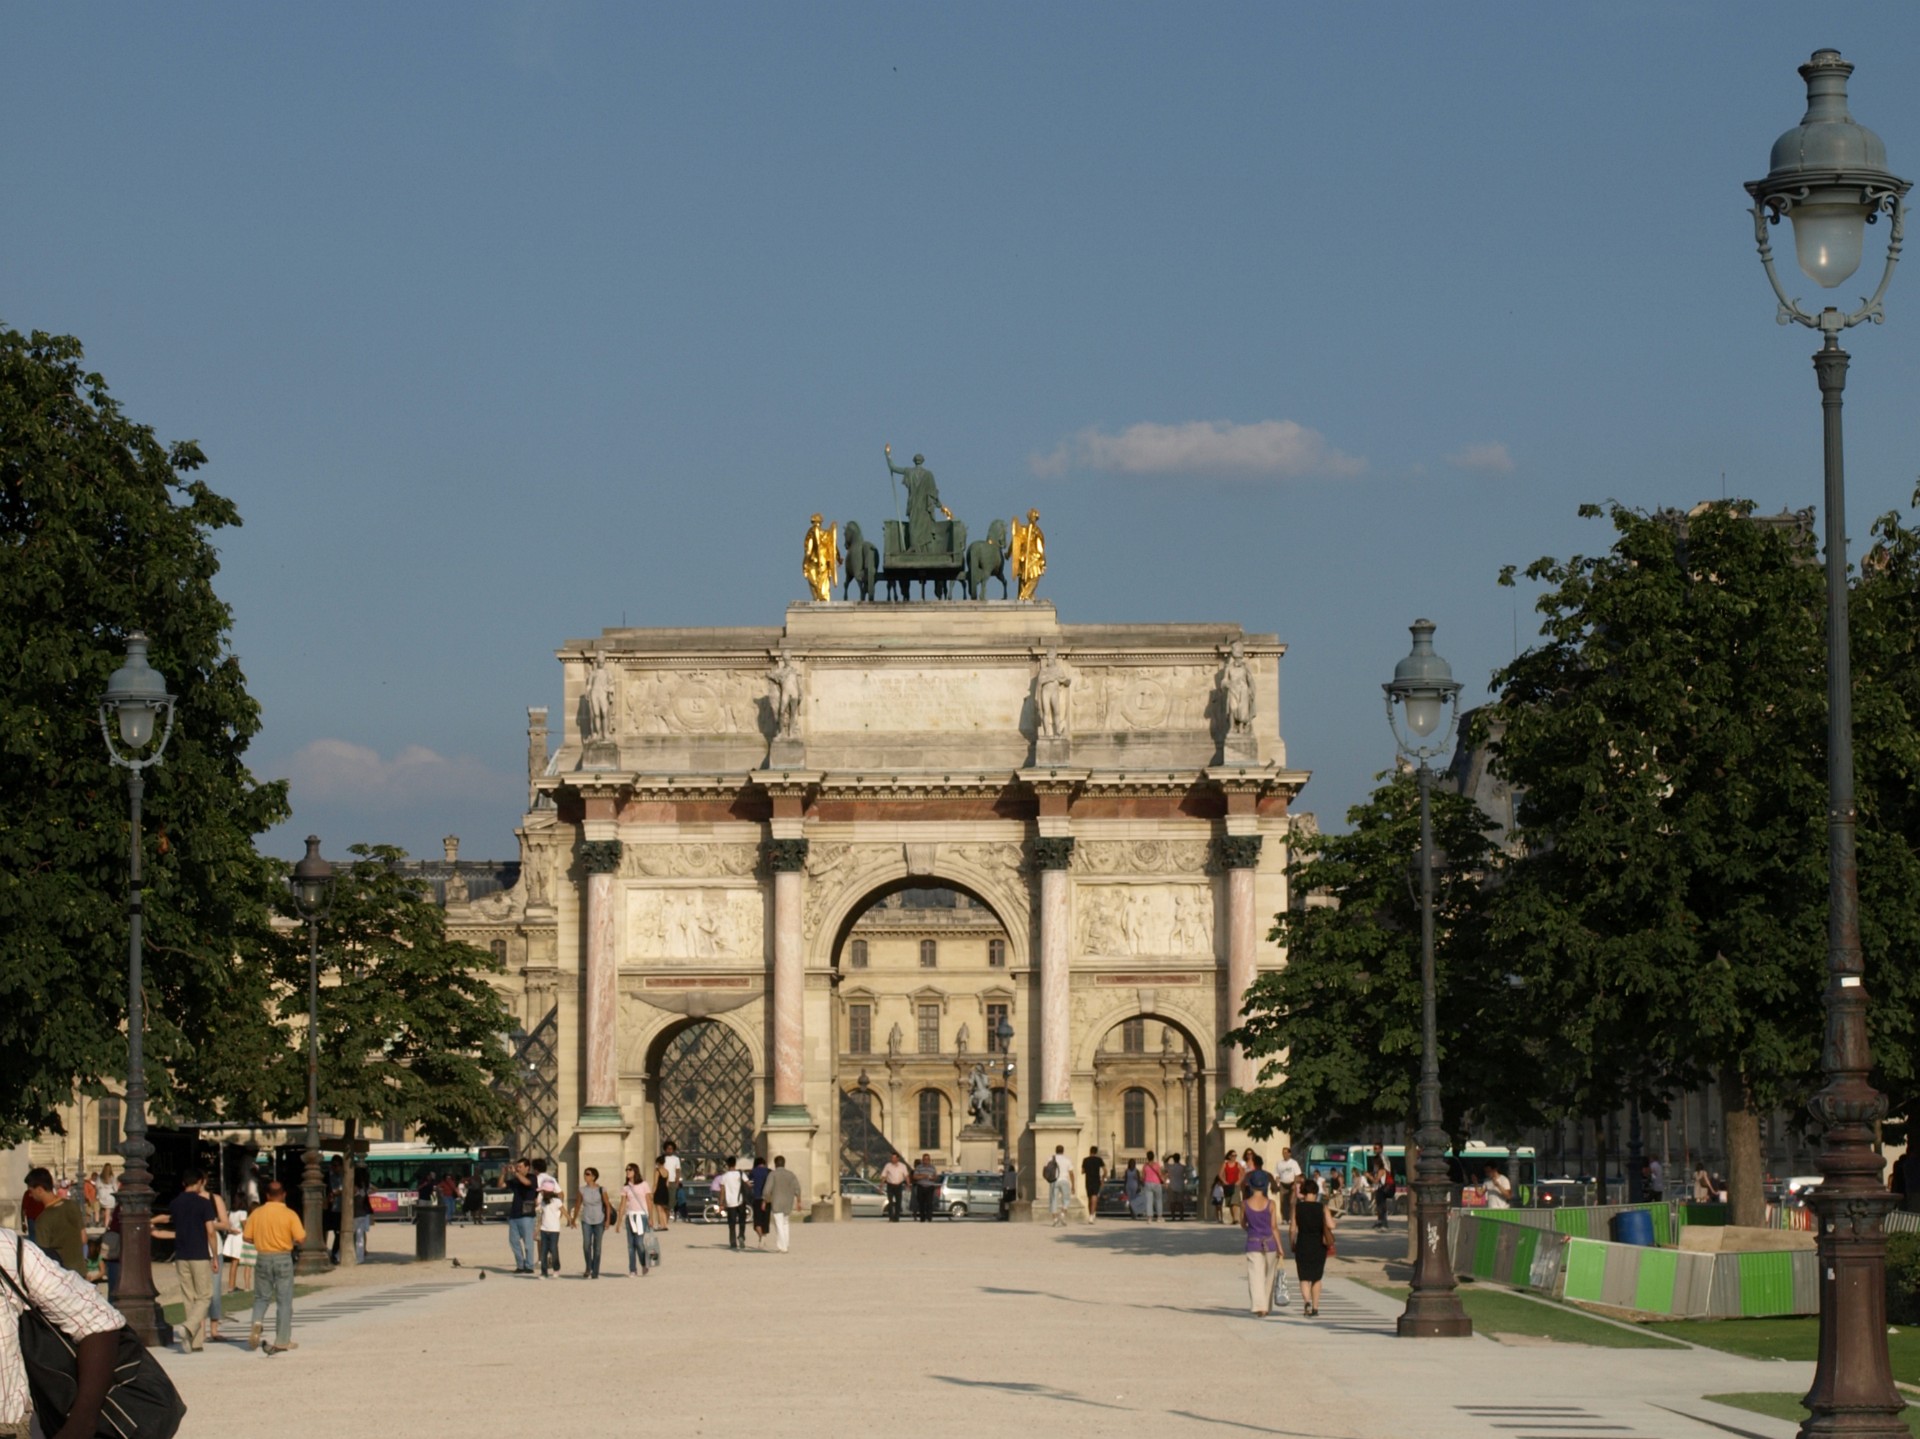 Approaching the Arc de Triomphe du Carrousel